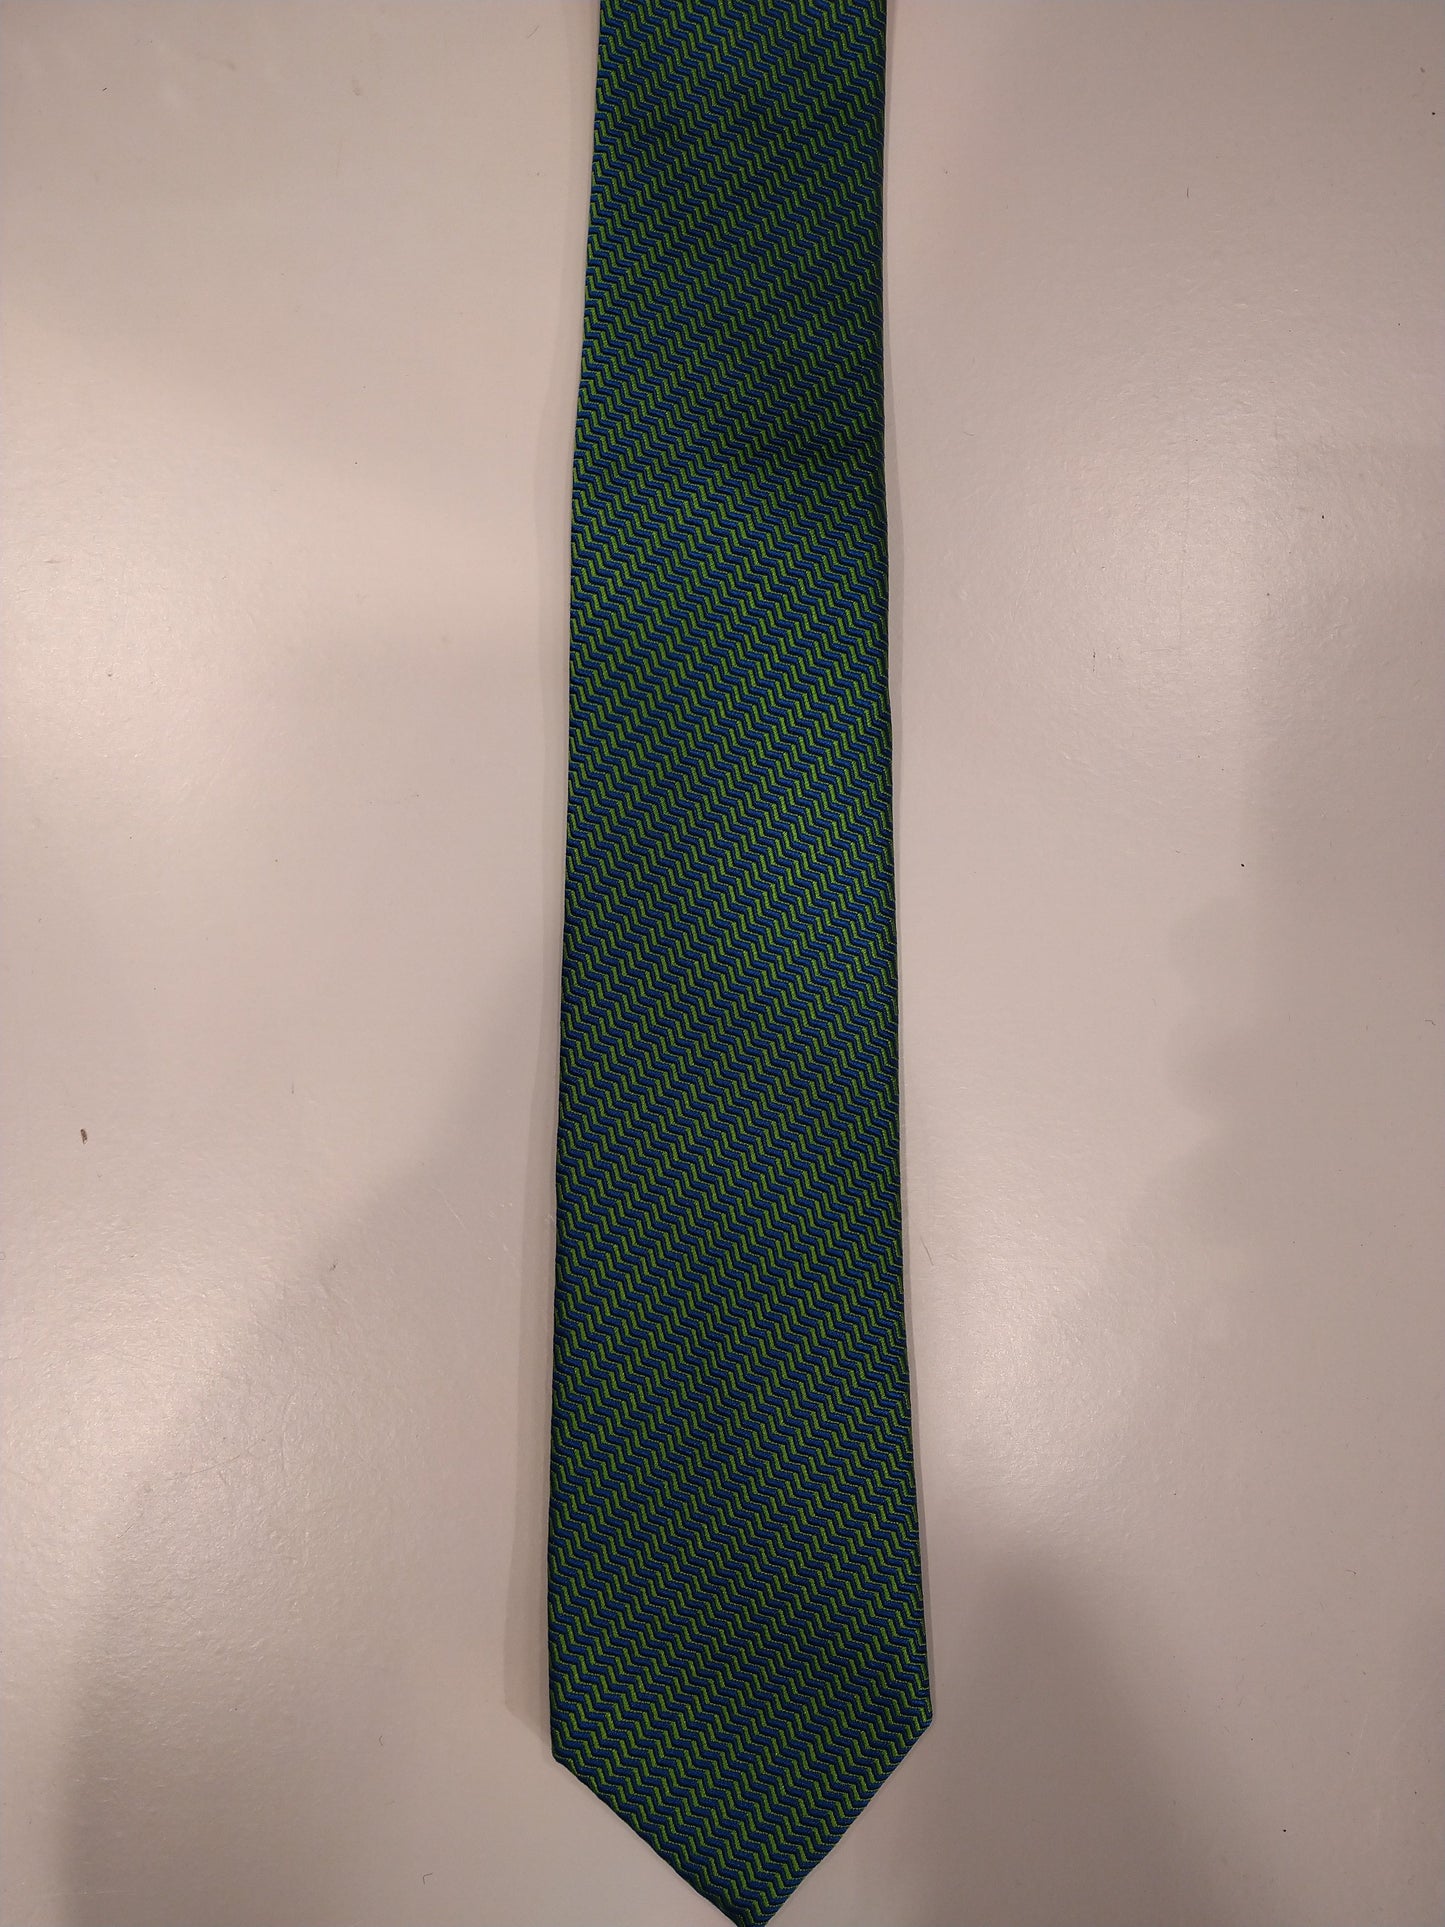 Max Goodman zijde stropdas. Groen met geel motief.